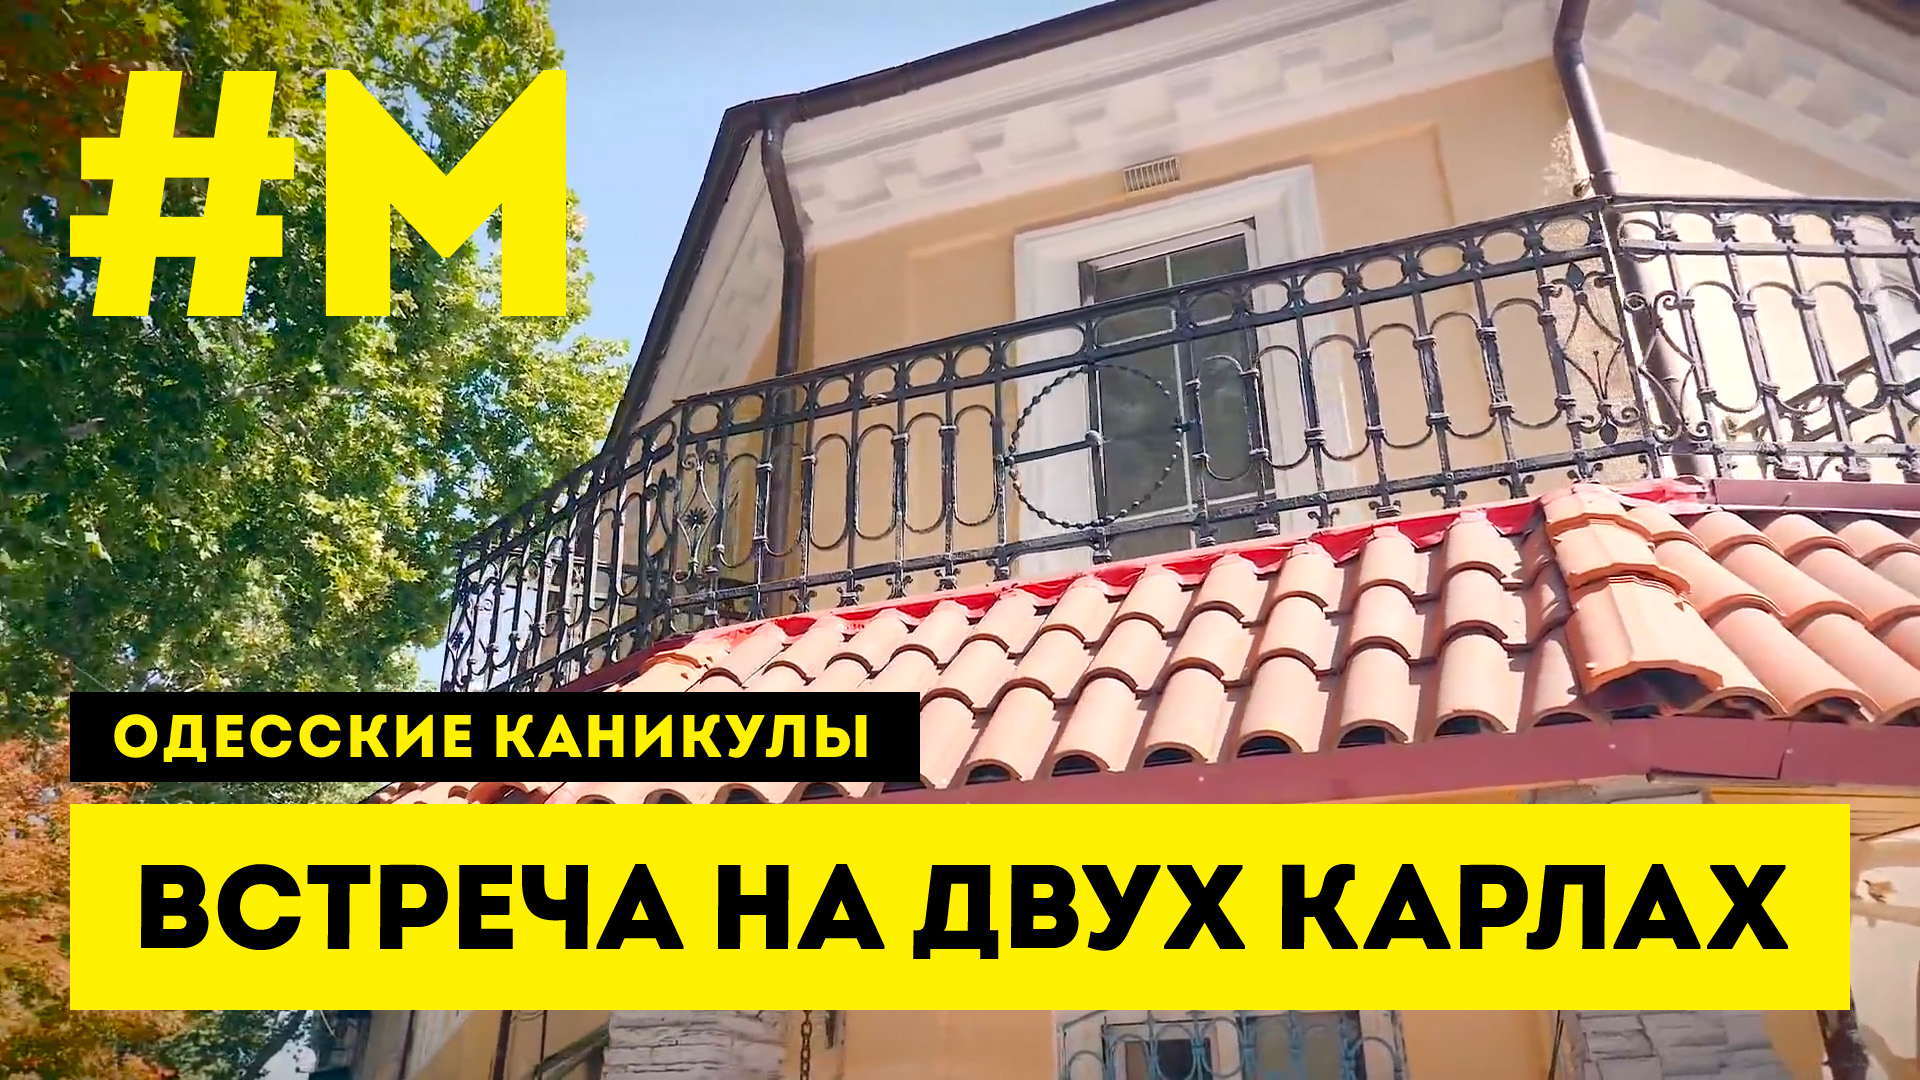 #МОНТЯН: Старейший дом Одессы ? #ОдесскиеКаникулы [19.09.2020 г.]